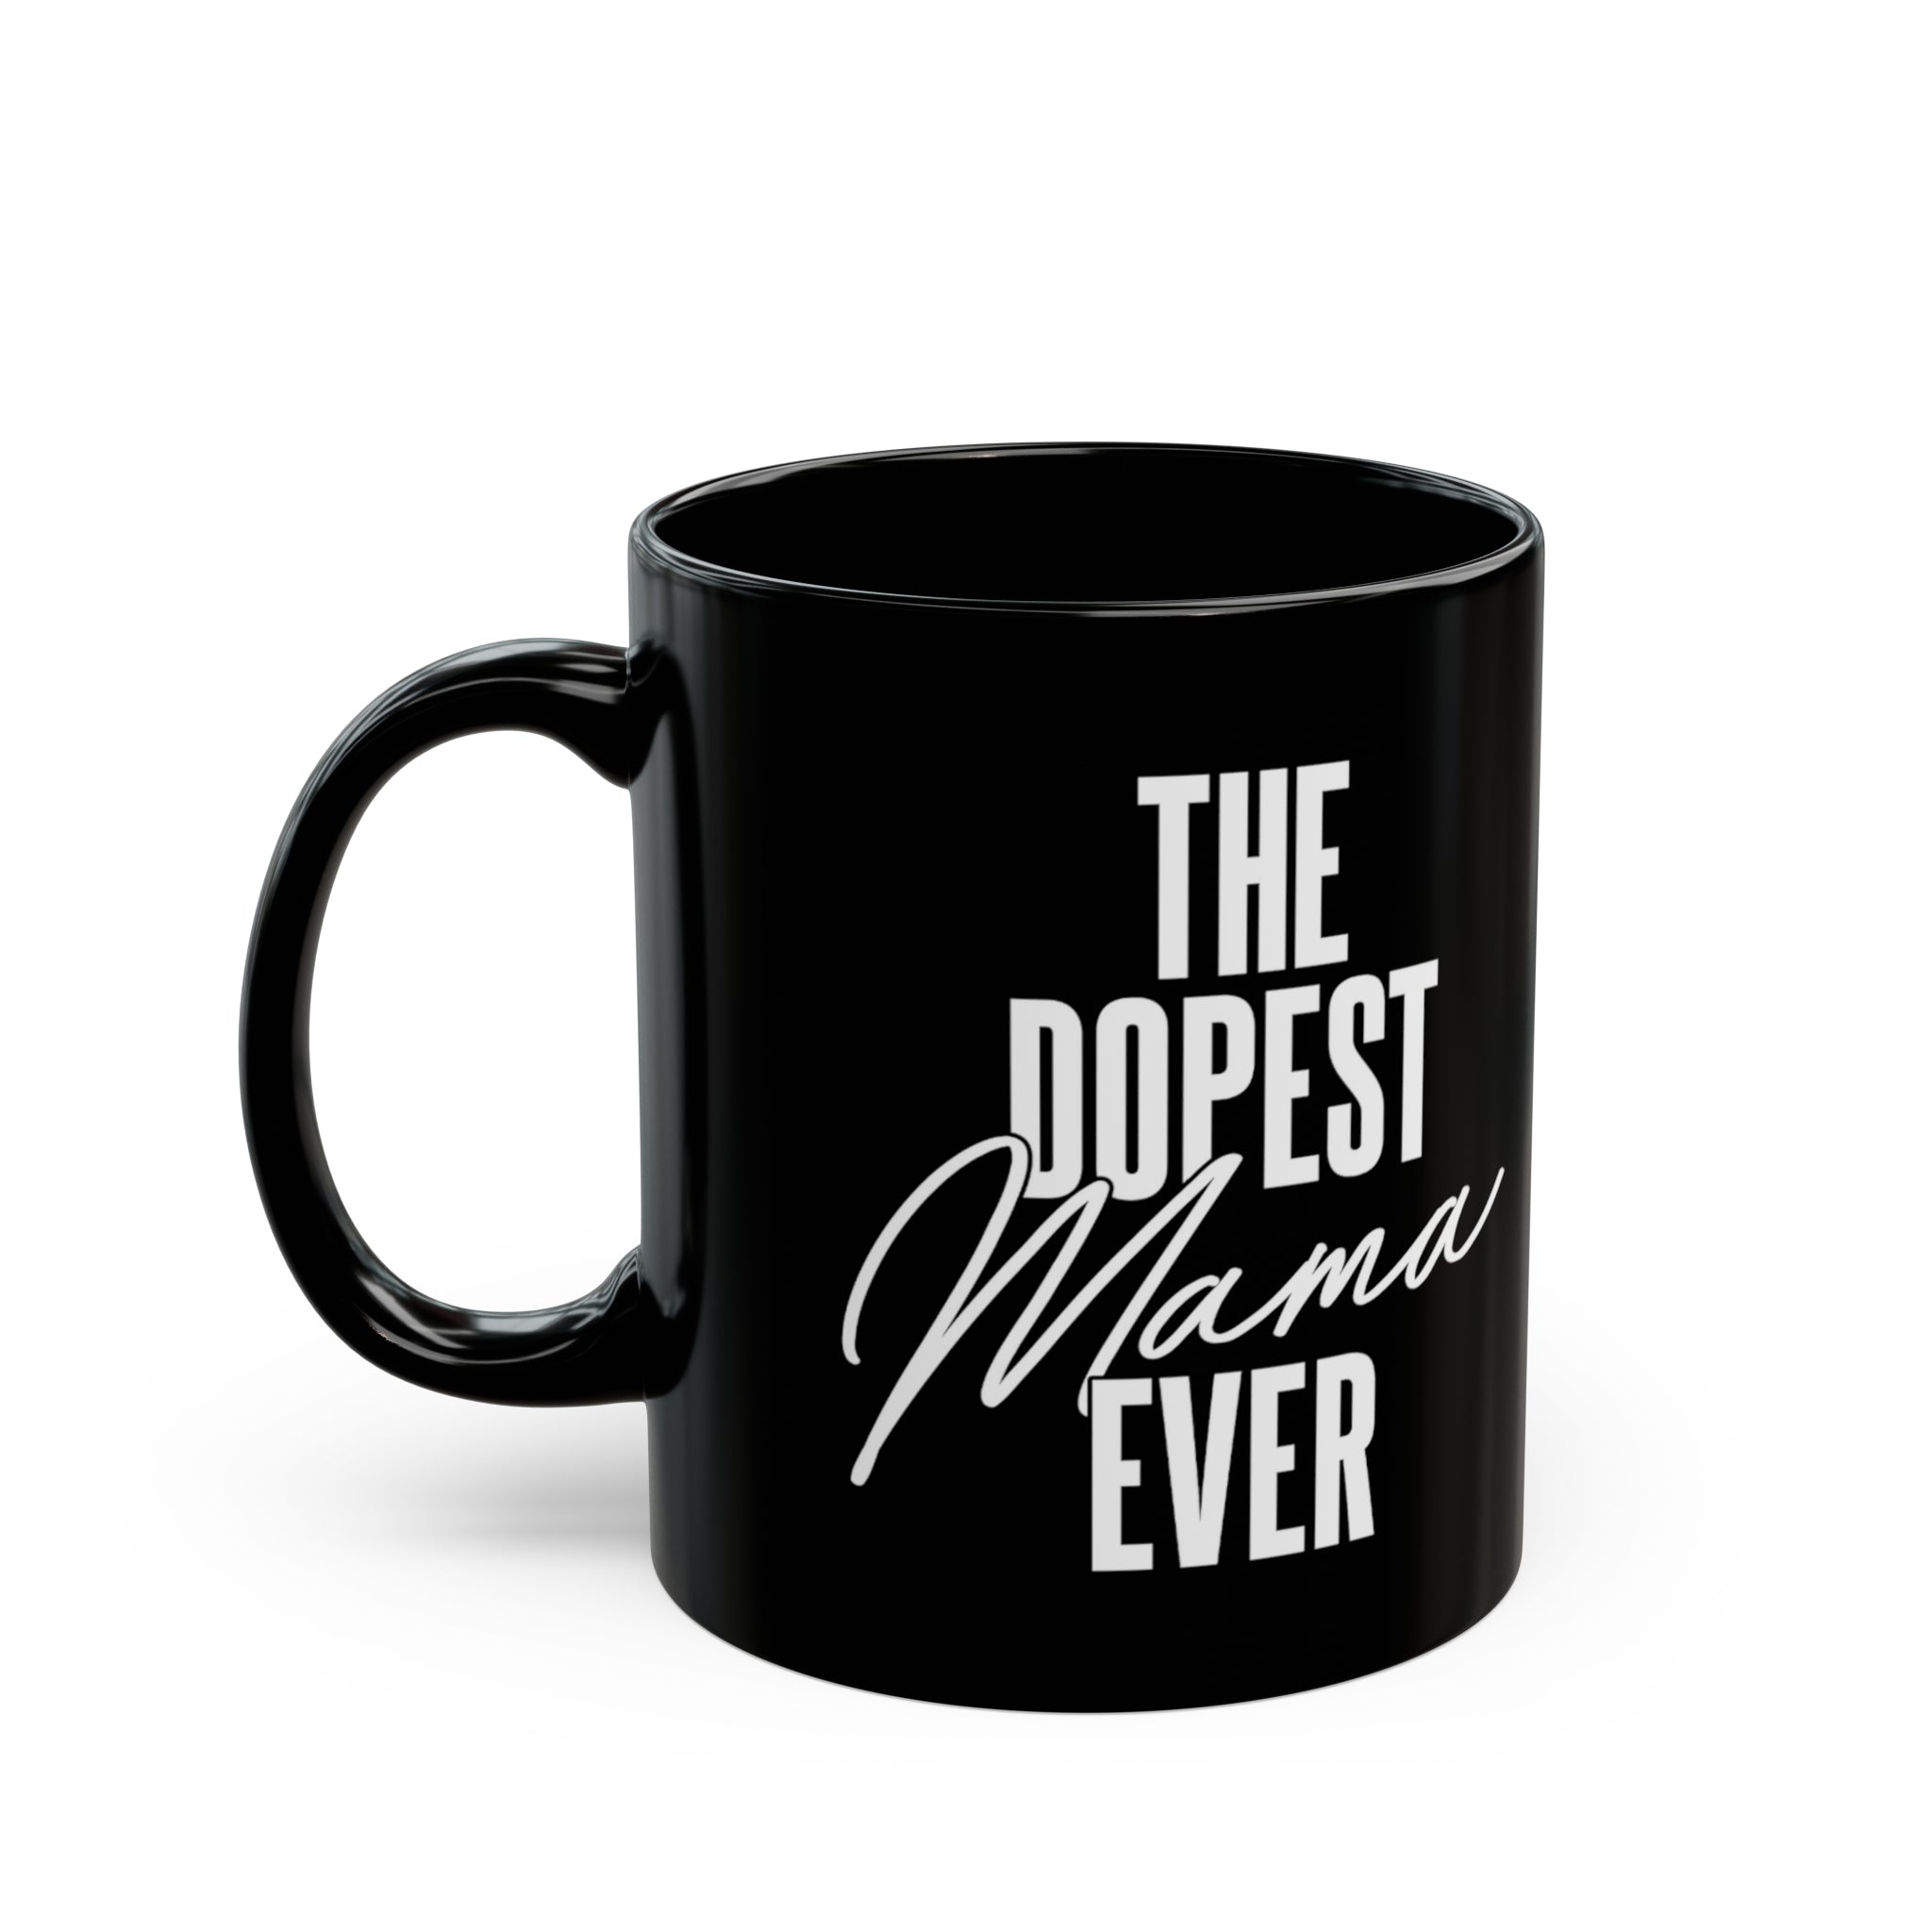 The Dopest Mama Ever Mug 11oz